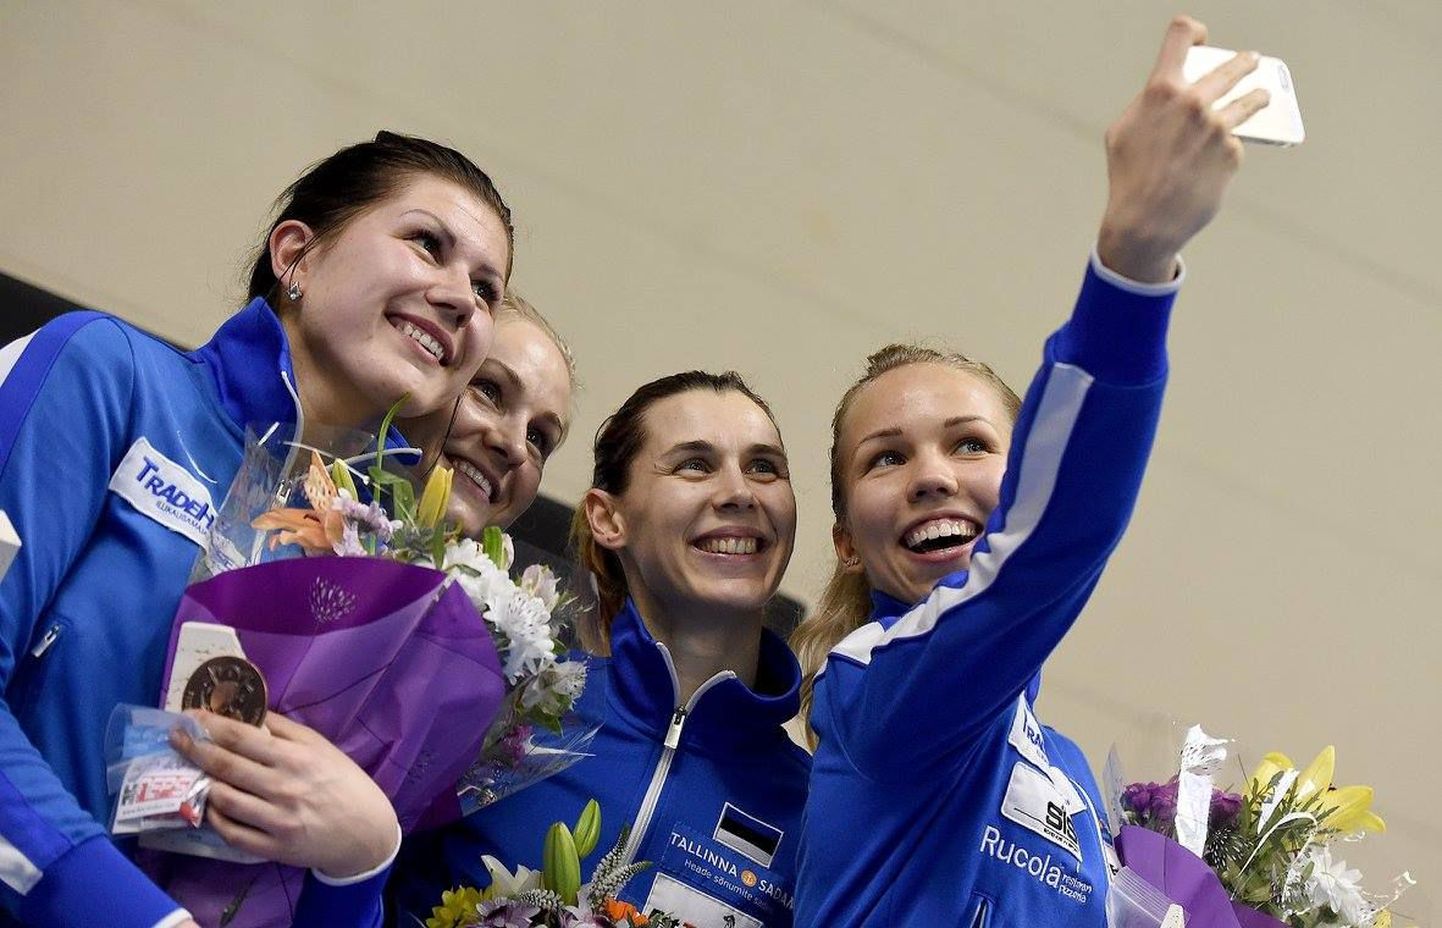 Erika Kirpu jäädvustamas Eesti epeenaiskonna võidupidu. Lisaks talle jäävad pildile Julia Beljajeva (vasakult), Kristina Kuusk ja Irina Embrich.